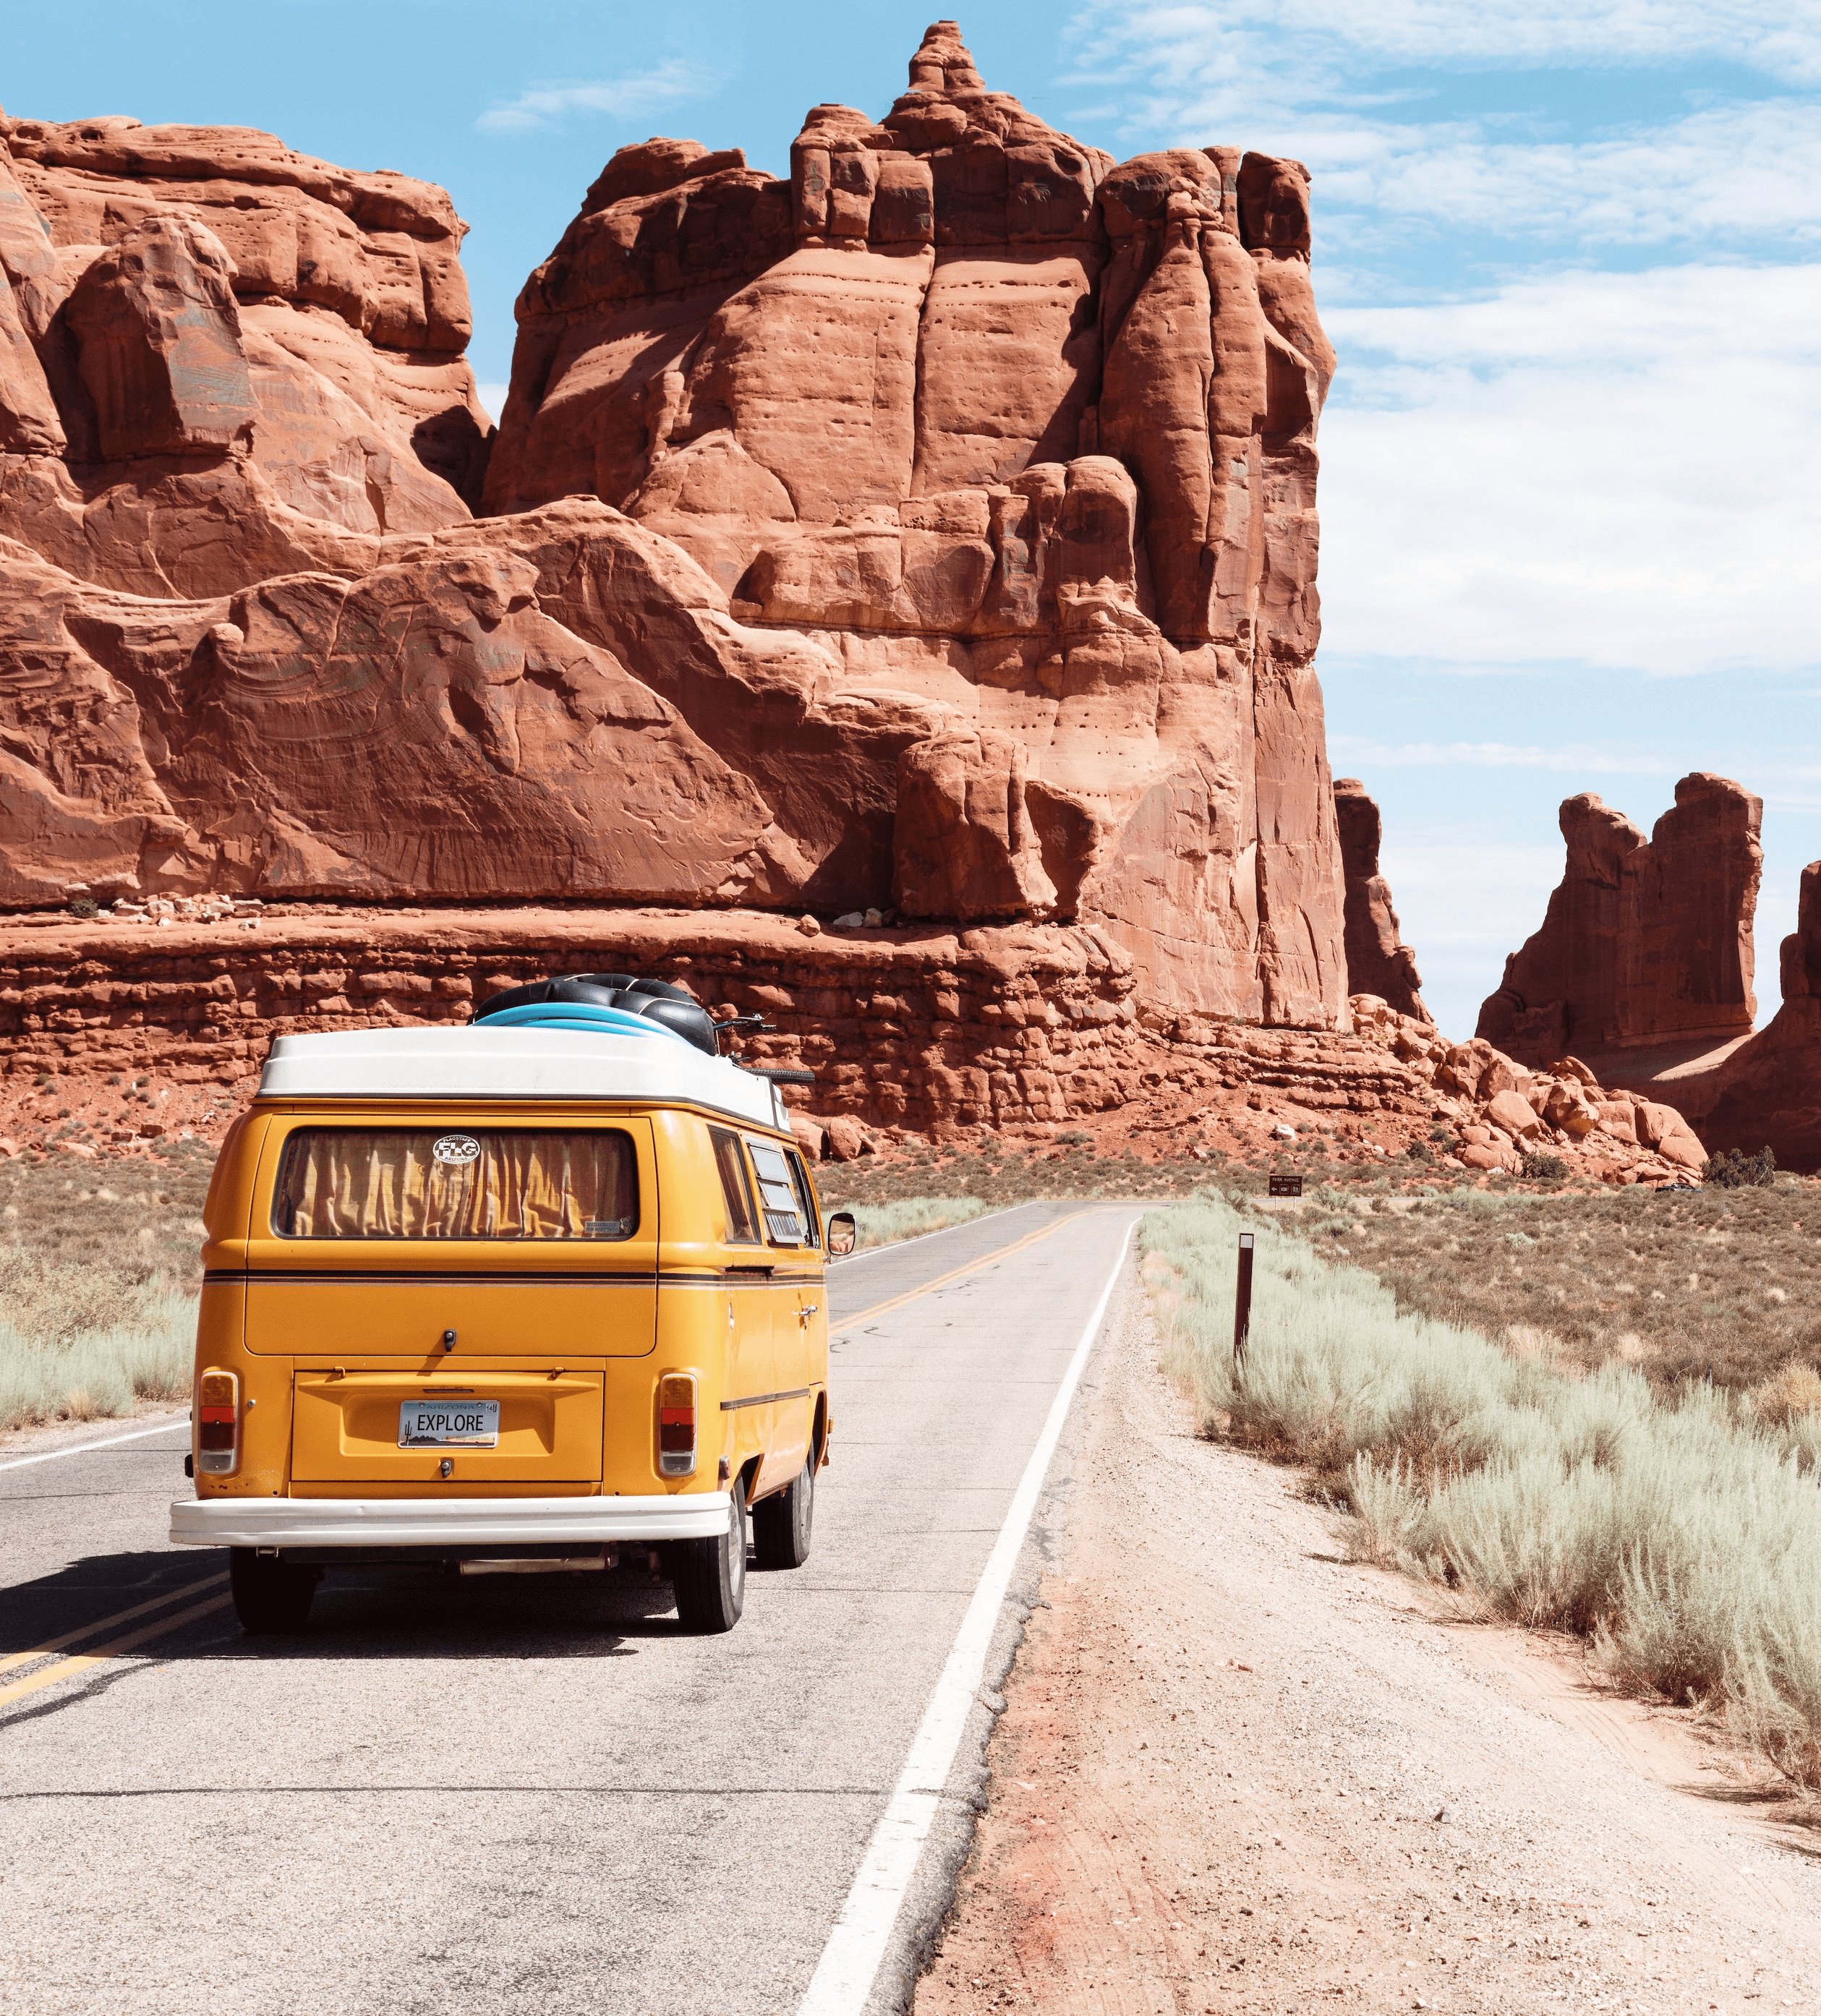 A yellow VW camper van in the desert